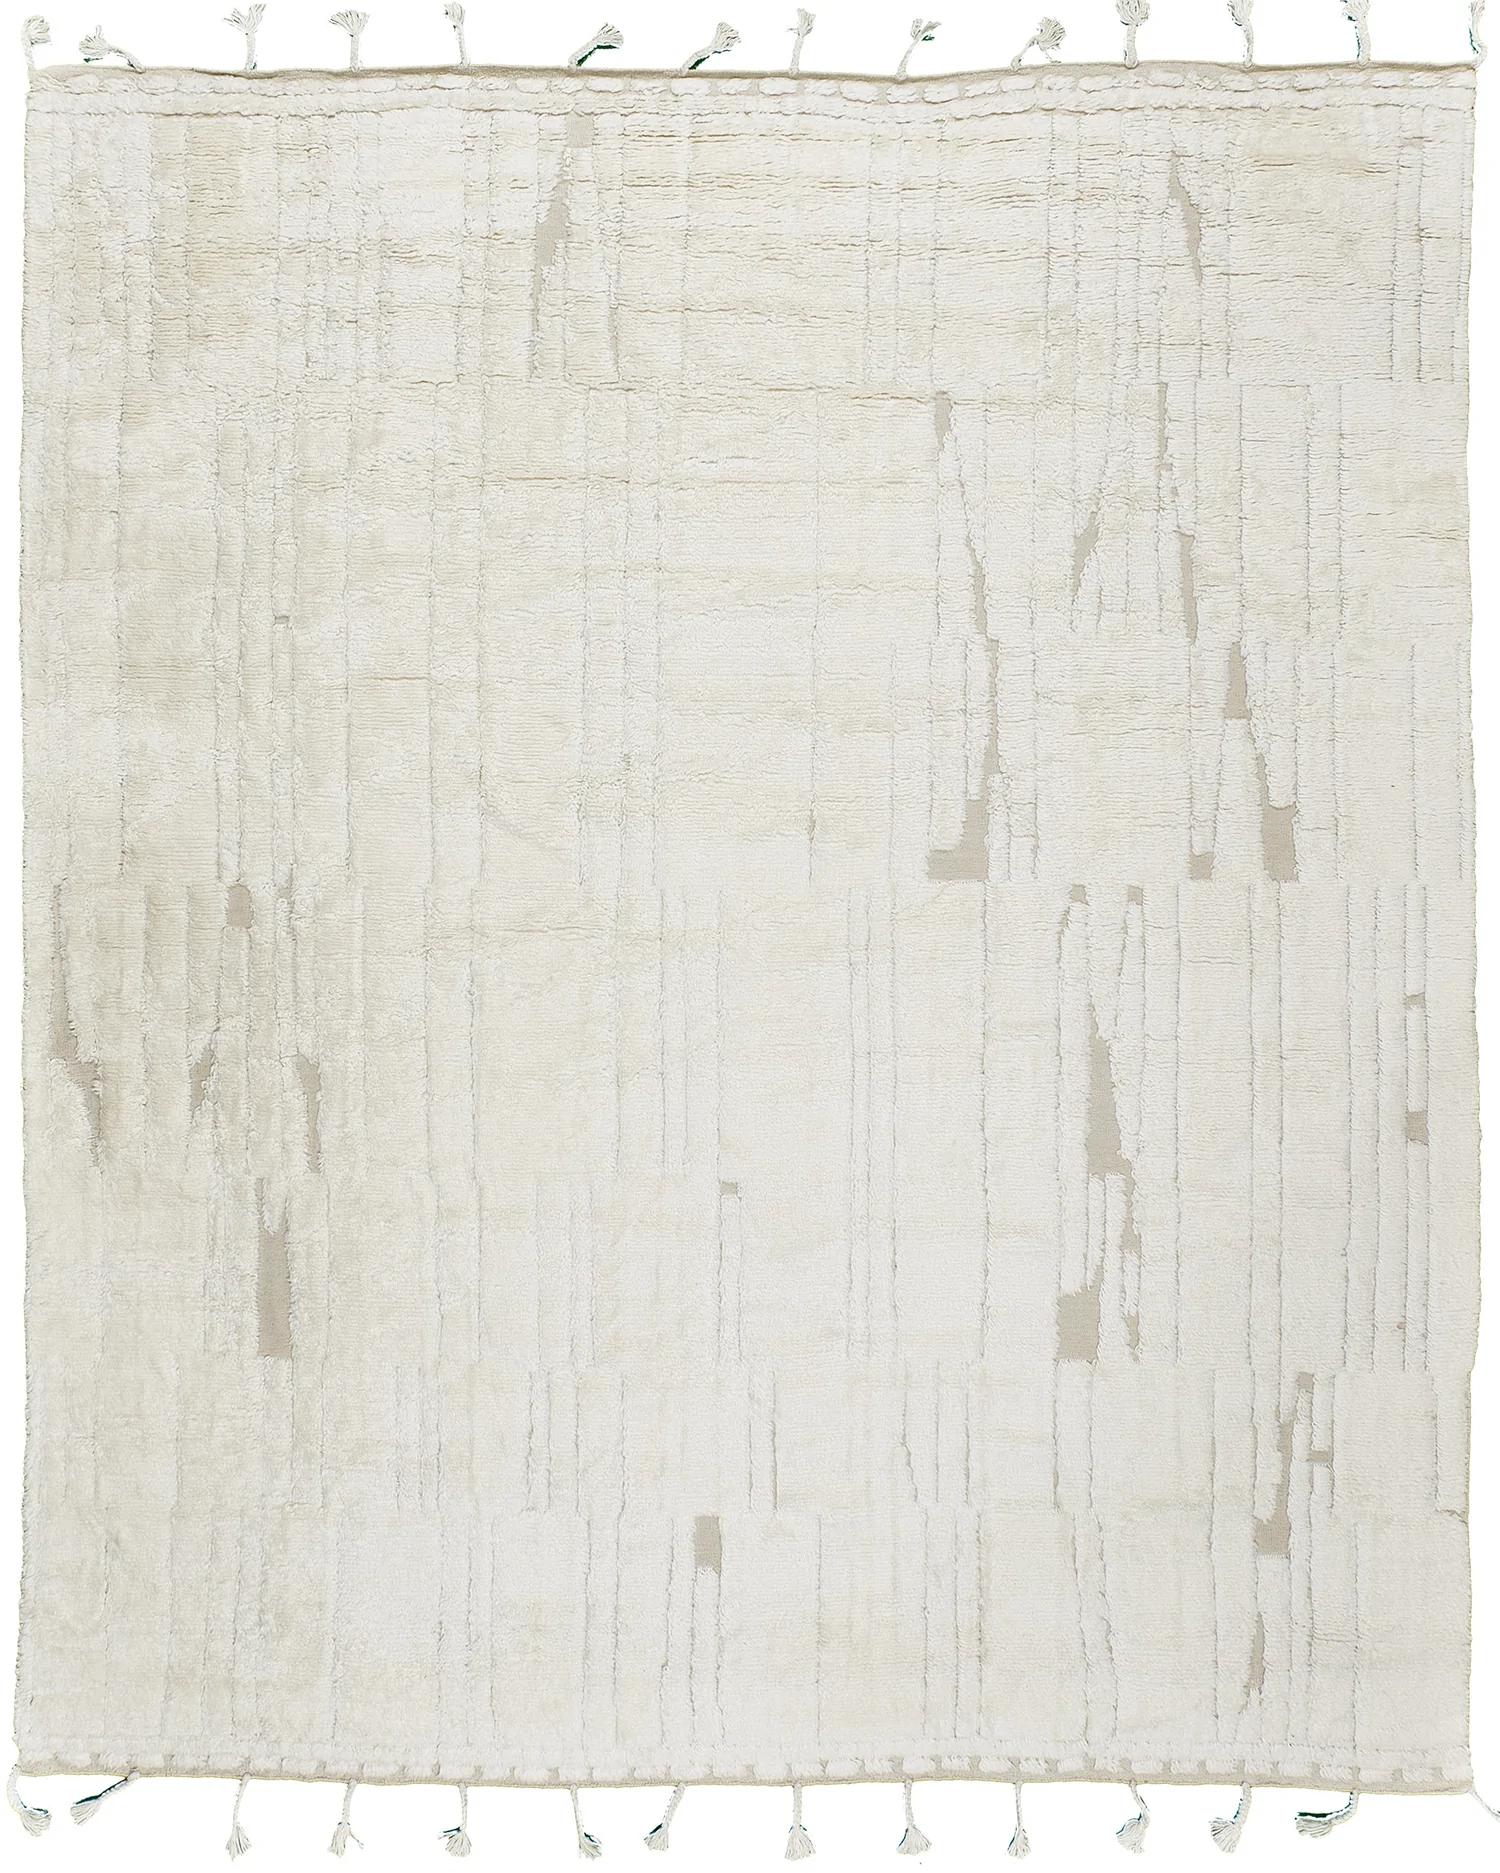 De Mehbaran : Notes' est un élégant tapis shag en laine gaufrée. Elle fait partie de la Collection Design/One qui s'inspire de différents aspects de l'architecture. Ne vous laissez pas tromper par la simplicité de ce tapis crème, il a de la